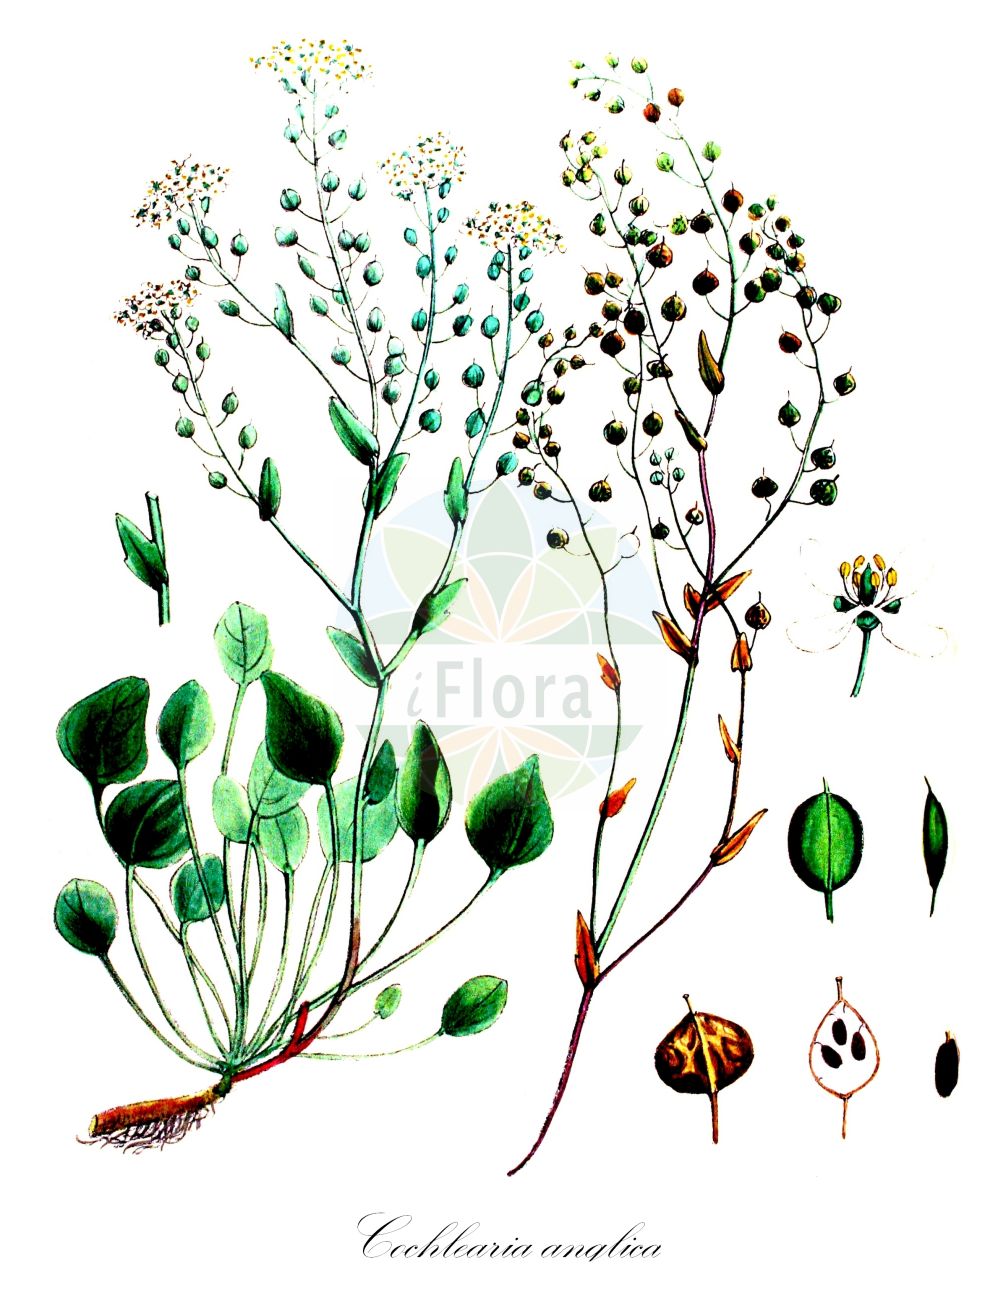 Historische Abbildung von Cochlearia anglica (Englisches Löffelkraut - English Scurvygrass). Das Bild zeigt Blatt, Bluete, Frucht und Same. ---- Historical Drawing of Cochlearia anglica (Englisches Löffelkraut - English Scurvygrass). The image is showing leaf, flower, fruit and seed.(Cochlearia anglica,Englisches Löffelkraut,English Scurvygrass,Cochlearia anglica,Cochlearia officinalis subsp. anglica,Englisches Loeffelkraut,English Scurvygrass,Long-leaved Scurvygrass,Cochlearia,Löffelkraut,Scurvygrass,Brassicaceae,Kreuzblütler,Cabbage family,Blatt,Bluete,Frucht,Same,leaf,flower,fruit,seed,Kops (1800-1934))